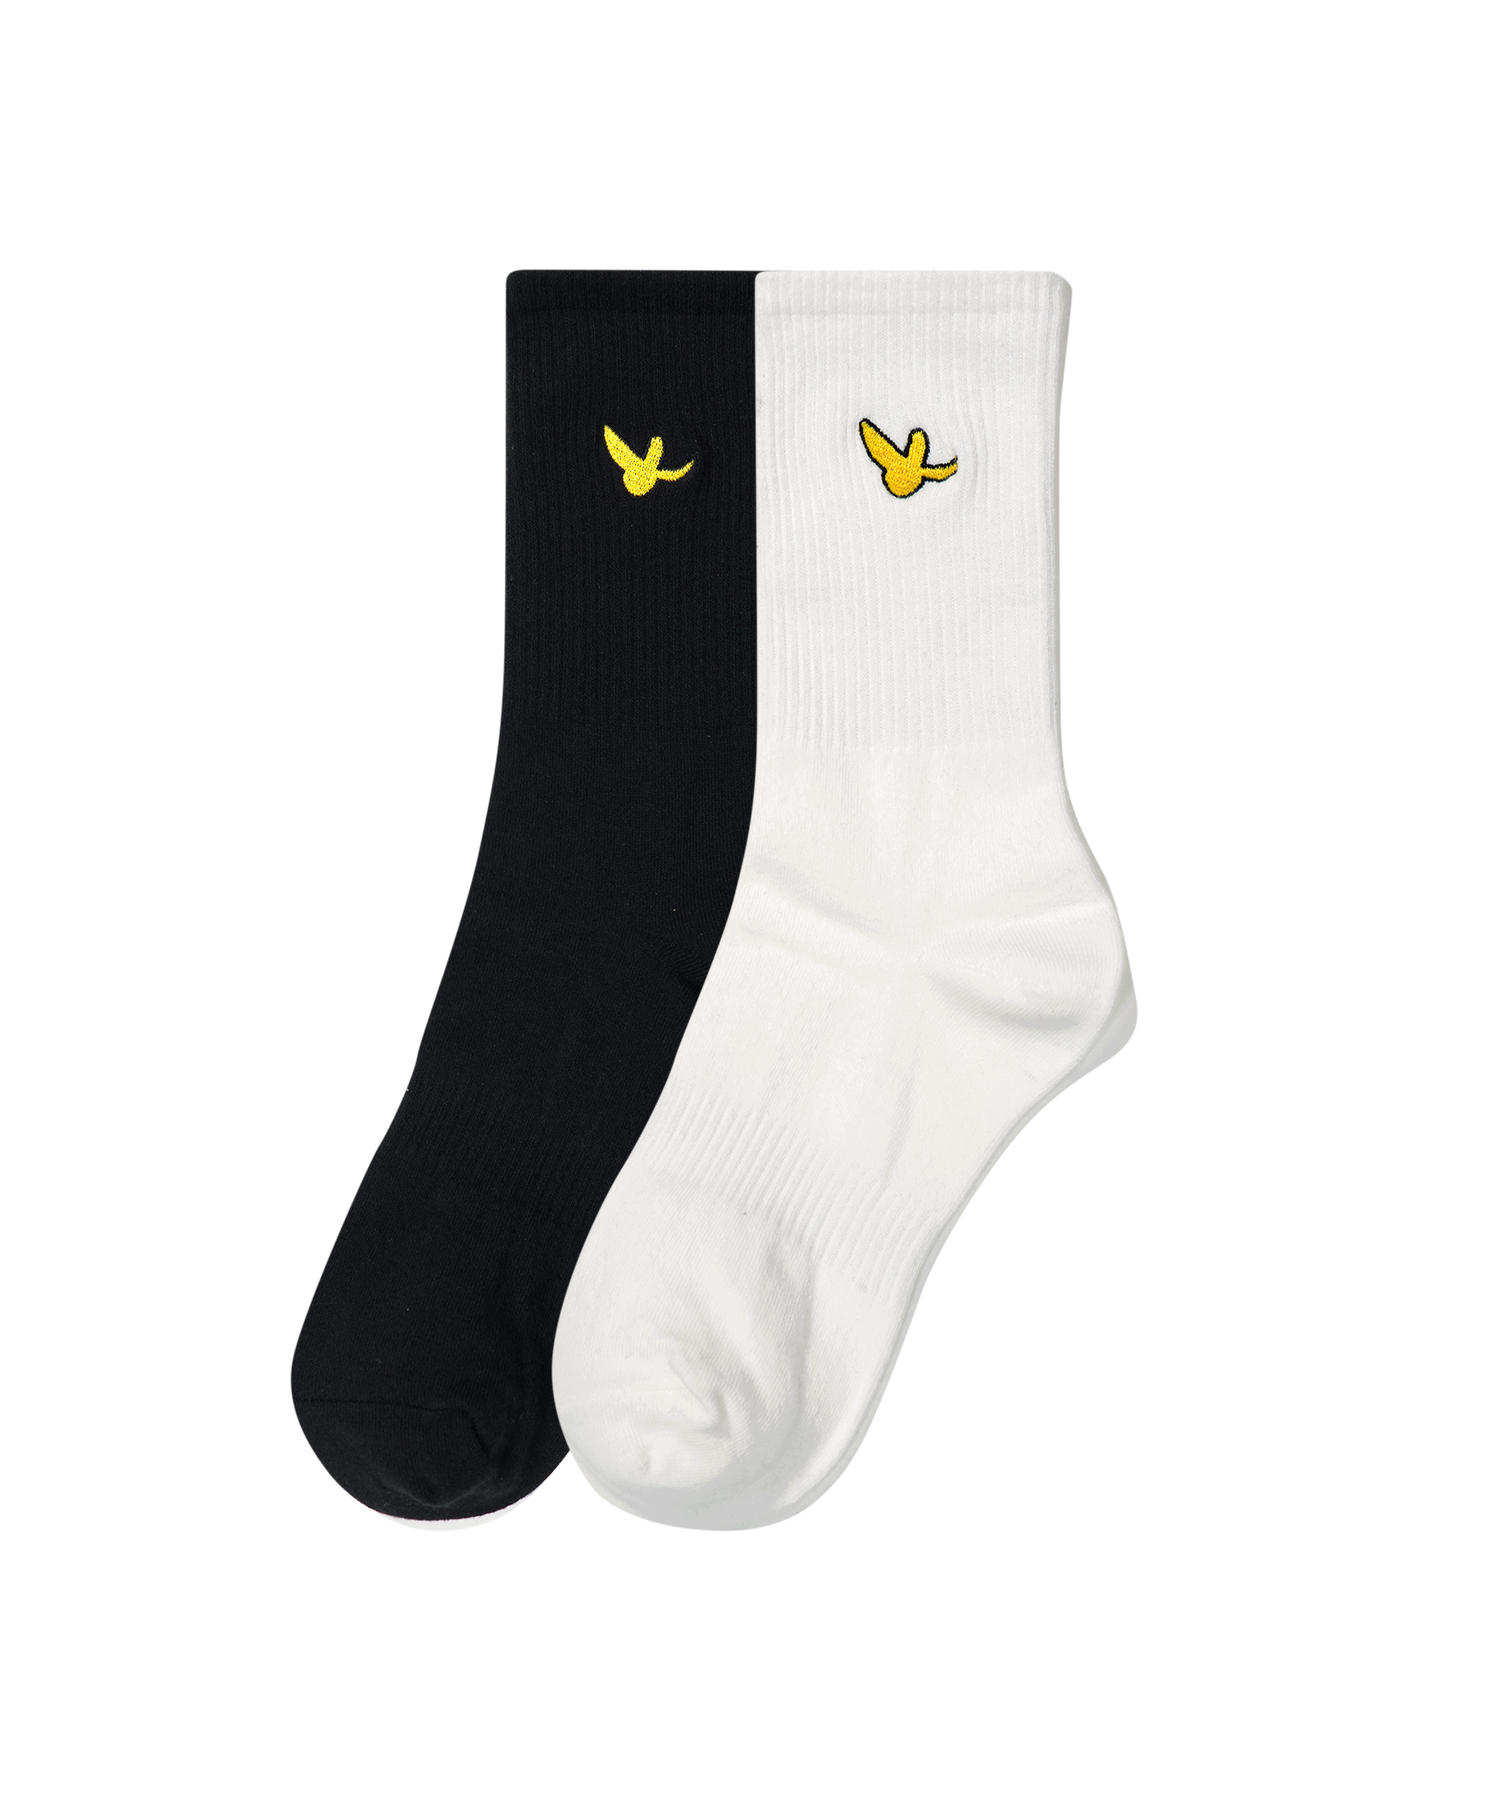 韓國What it isNt-Angel Logo Middle Socks 2PACK